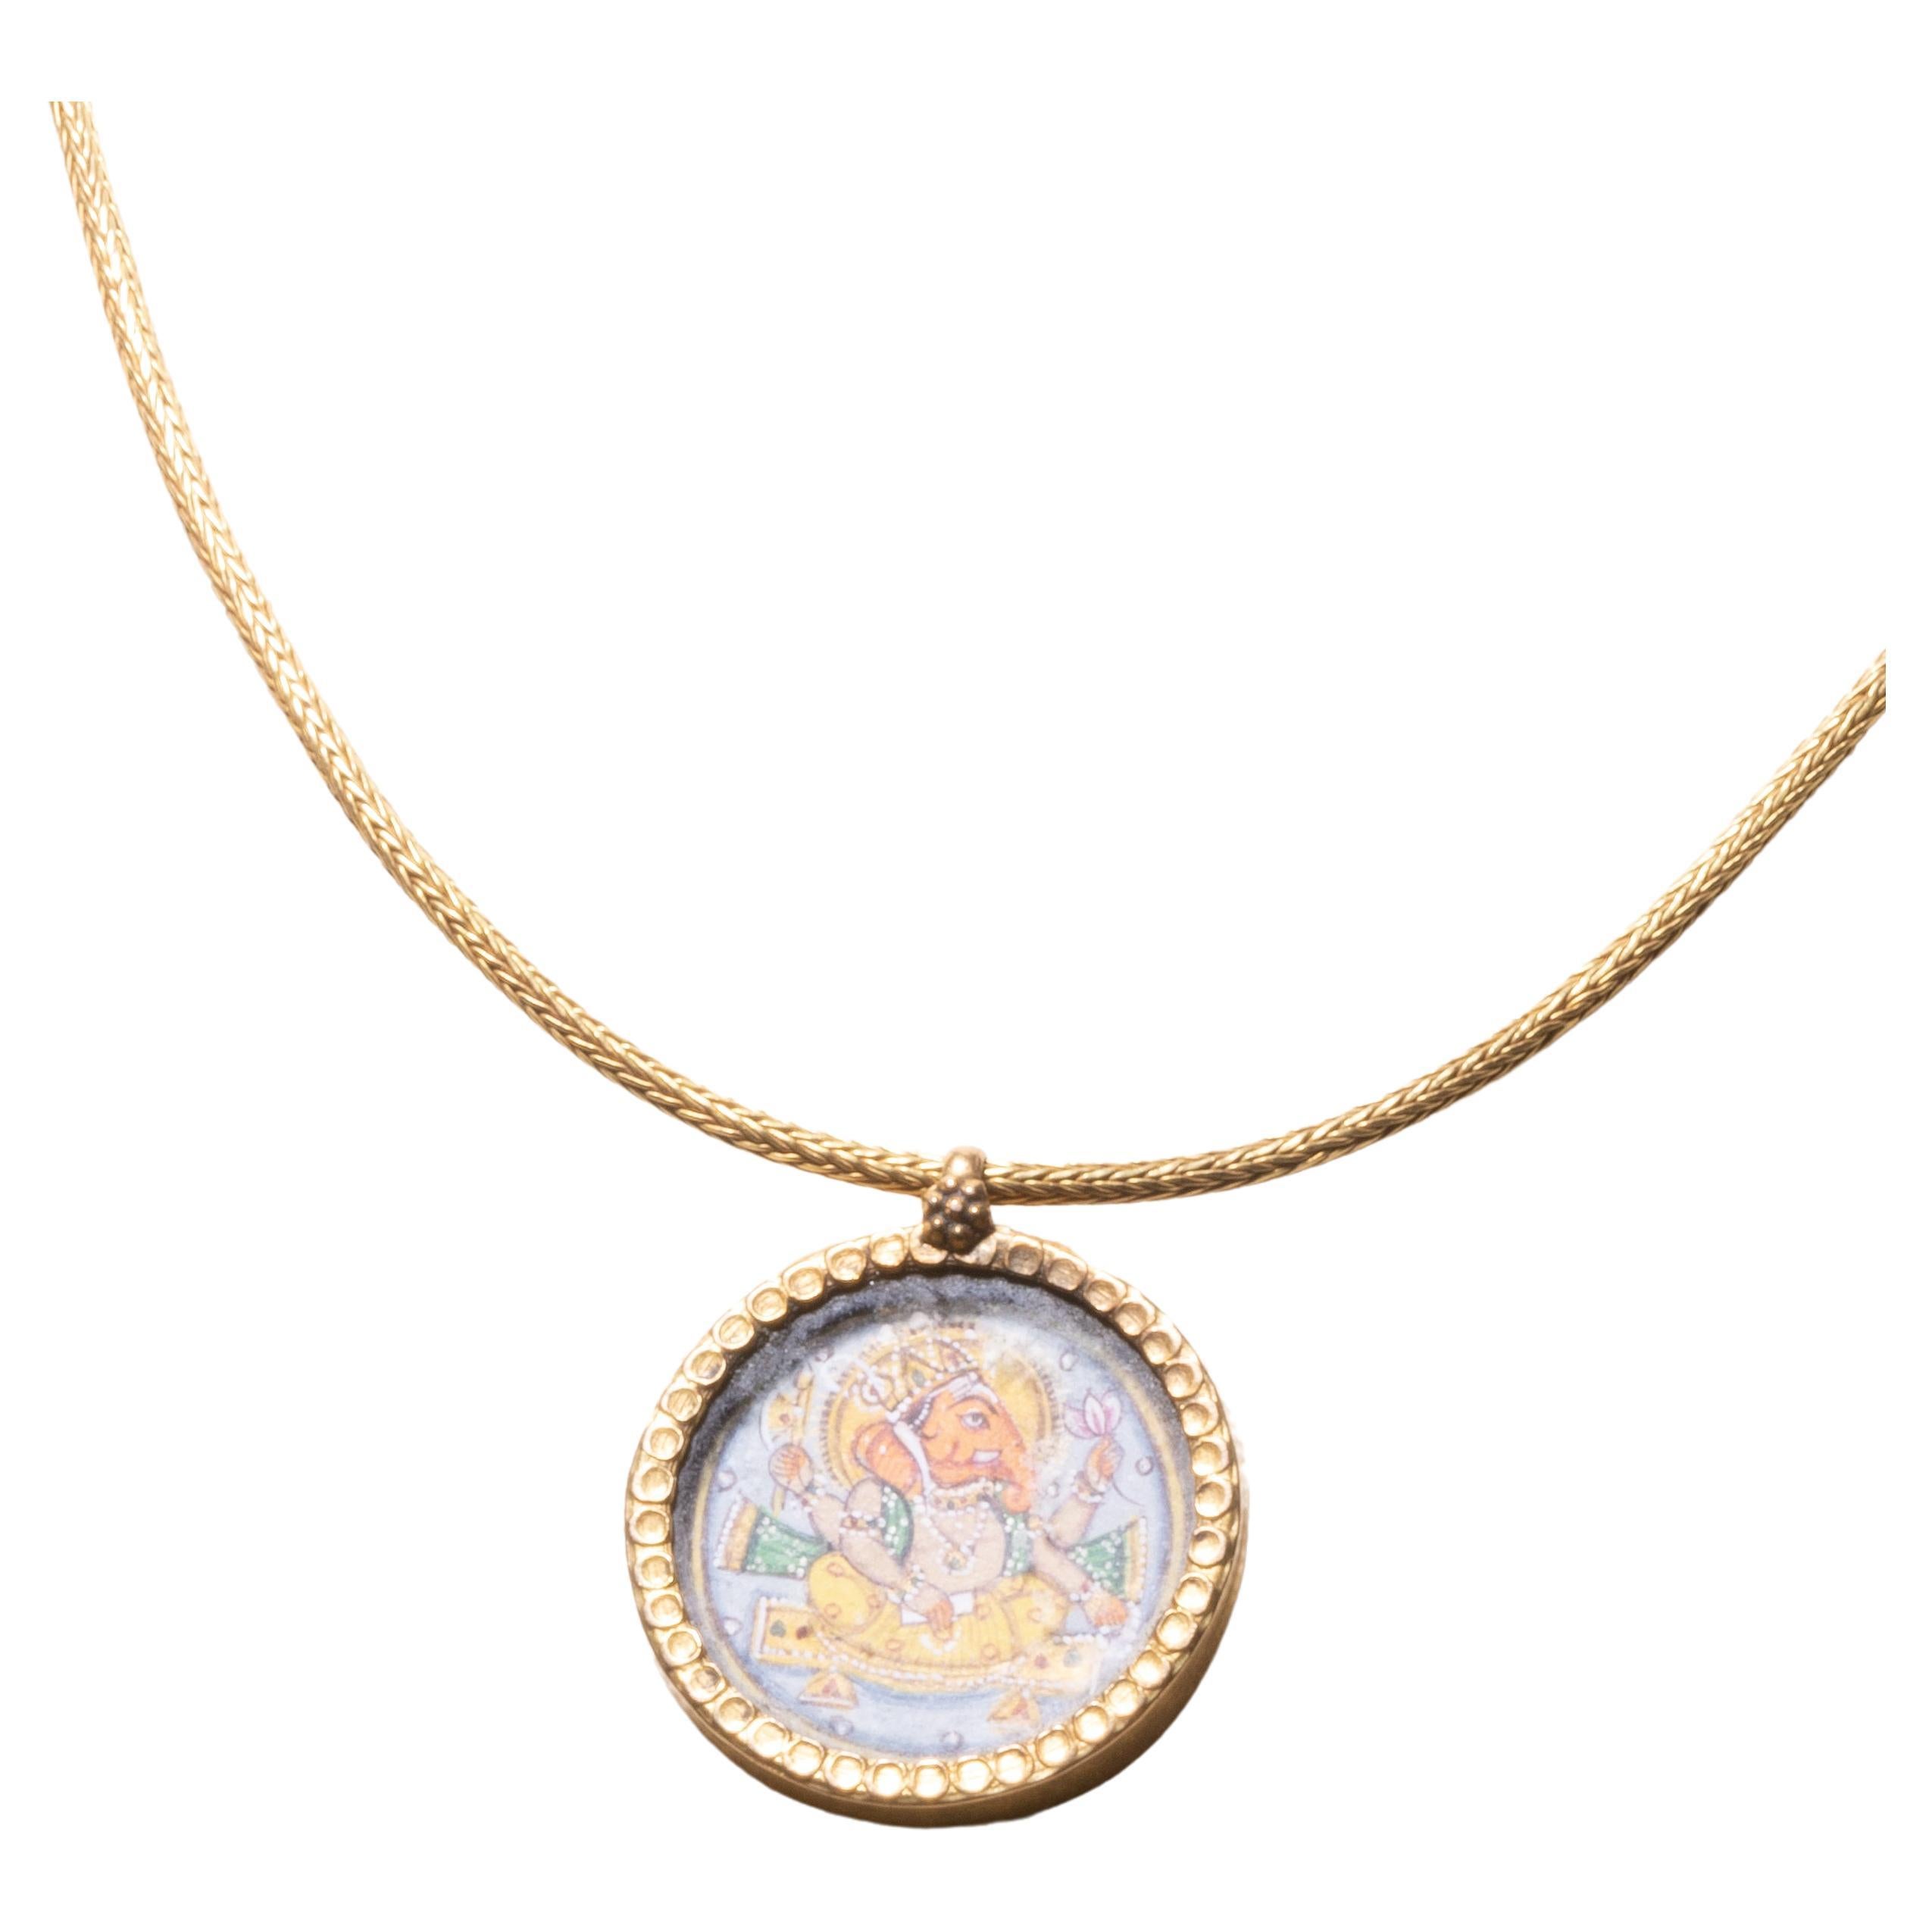 Ce charmant collier pendentif de bon augure est orné d'un Ganesh finement détaillé et peint à la main (la divinité hindoue connue comme étant celle qui lève les obstacles).  Il est entouré d'or 22 carats, avec un support en or et un travail